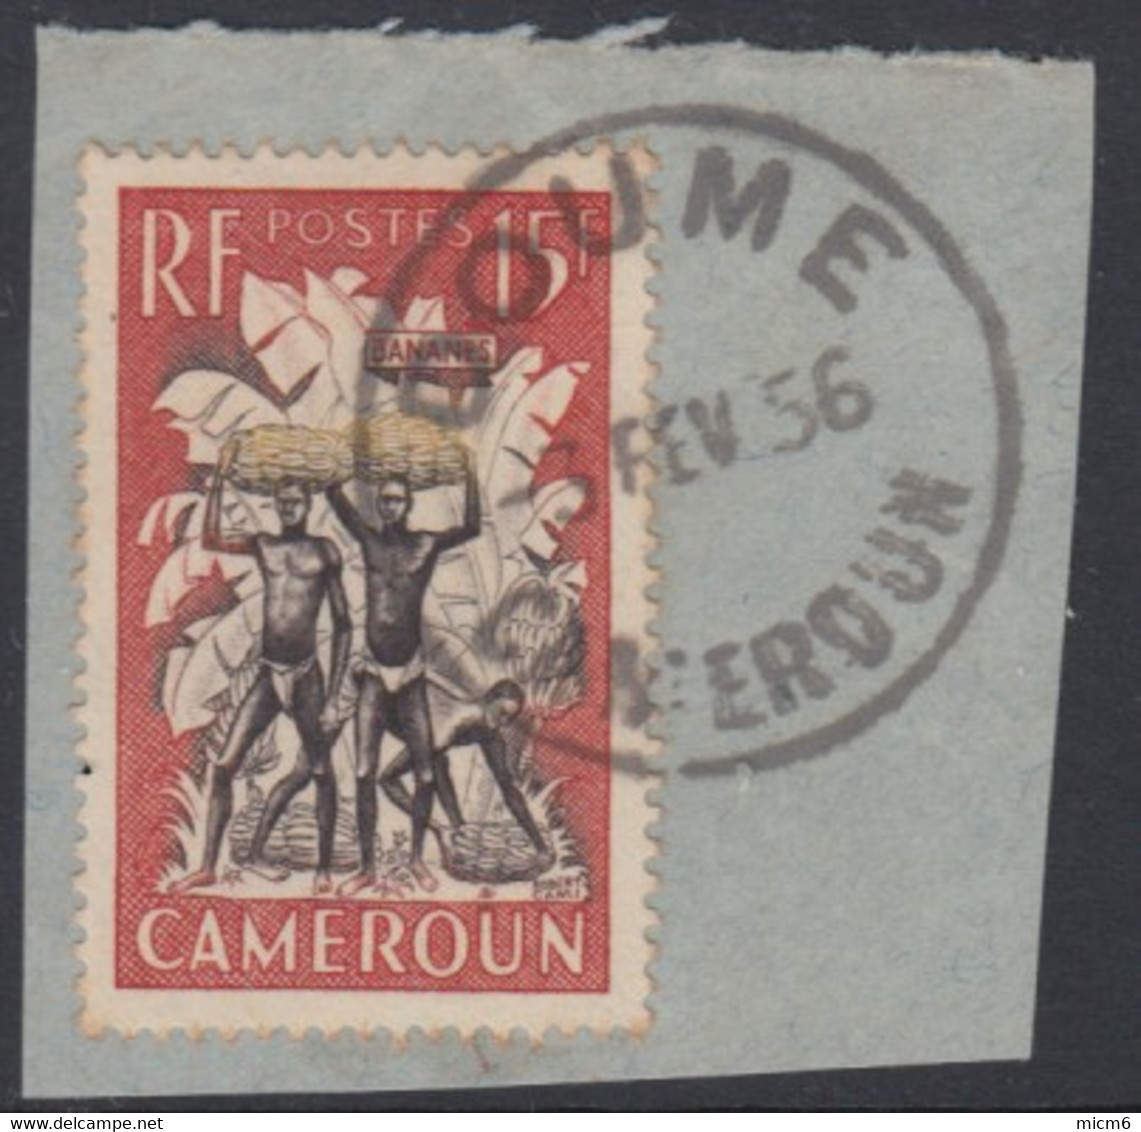 Cameroun Mandat Français - Doume Sur N° 298 (YT) N° 261 (AM). Oblitération. - Gebraucht